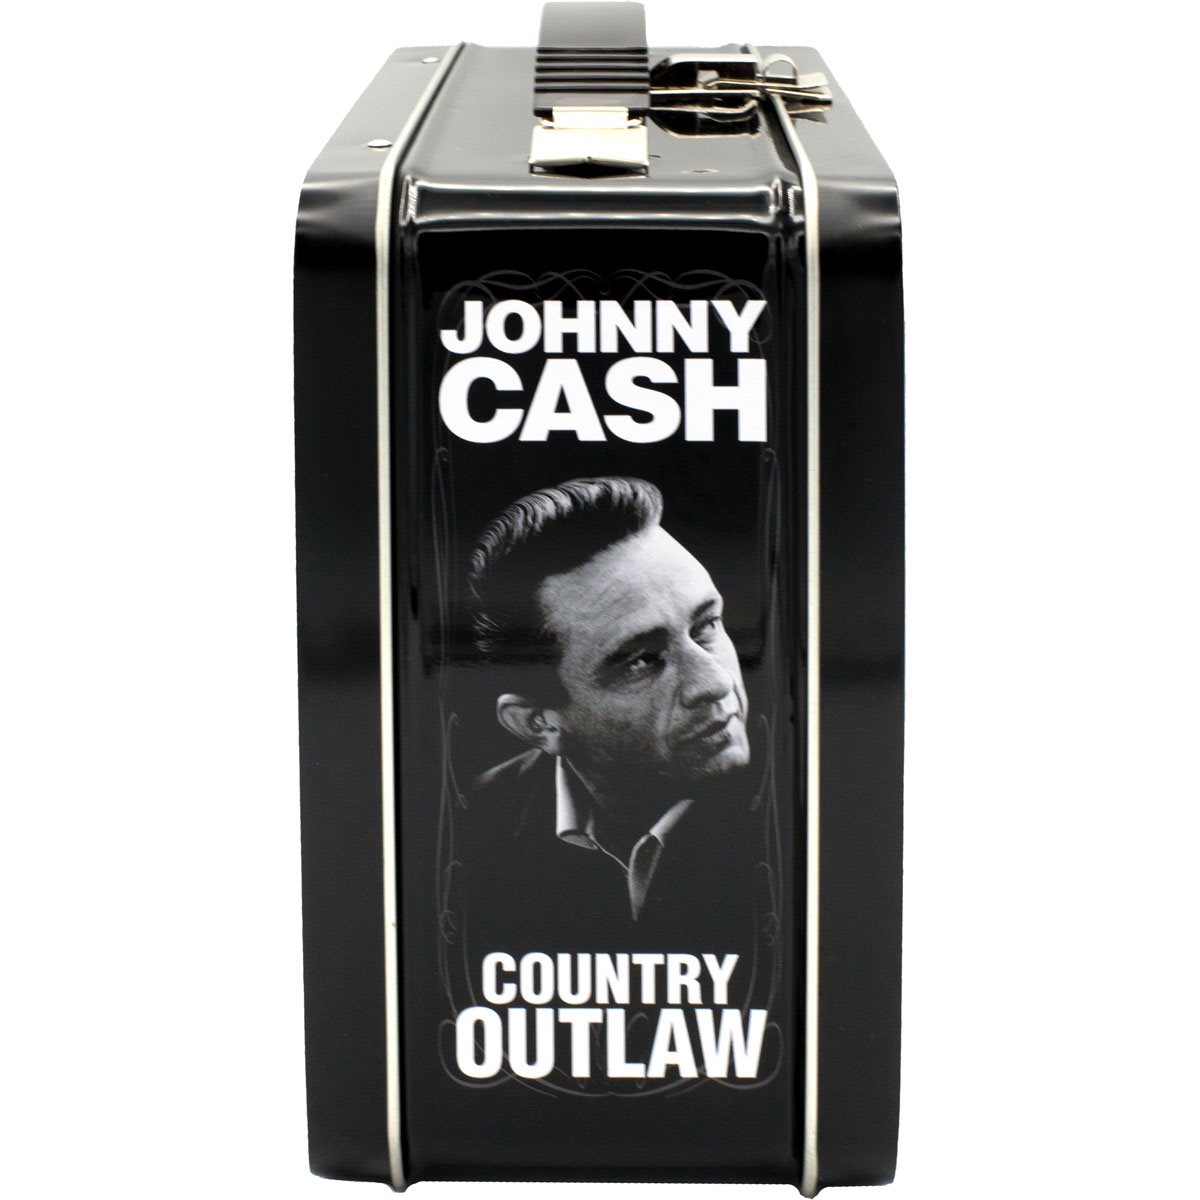 Johnny Cash Shoulder Clutch Bag - Inspire Uplift